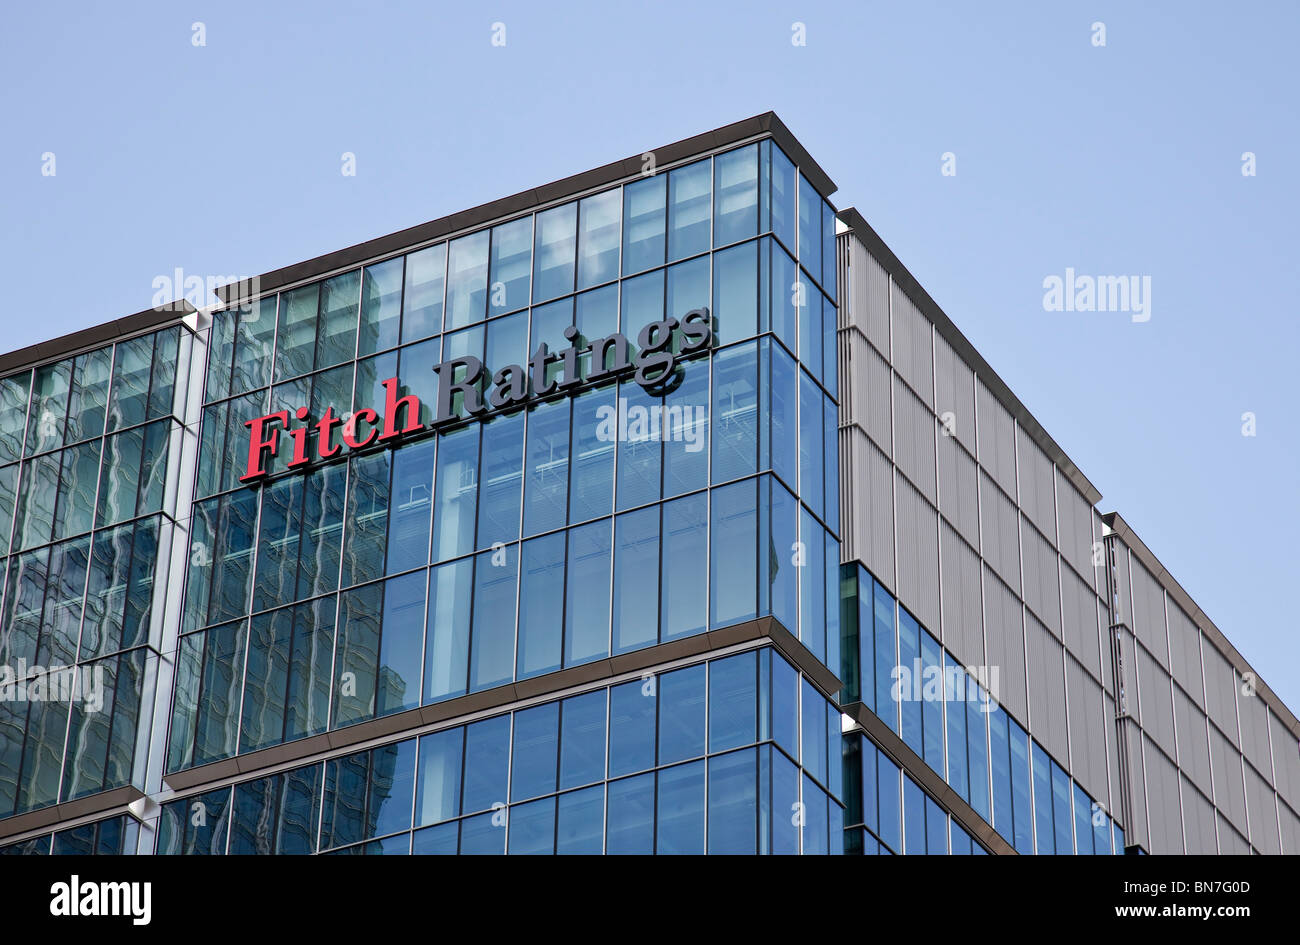 La sede de Fitch Ratings en Canary Wharf, el nuevo centro financiero en los Docklands de Londres. Foto de stock